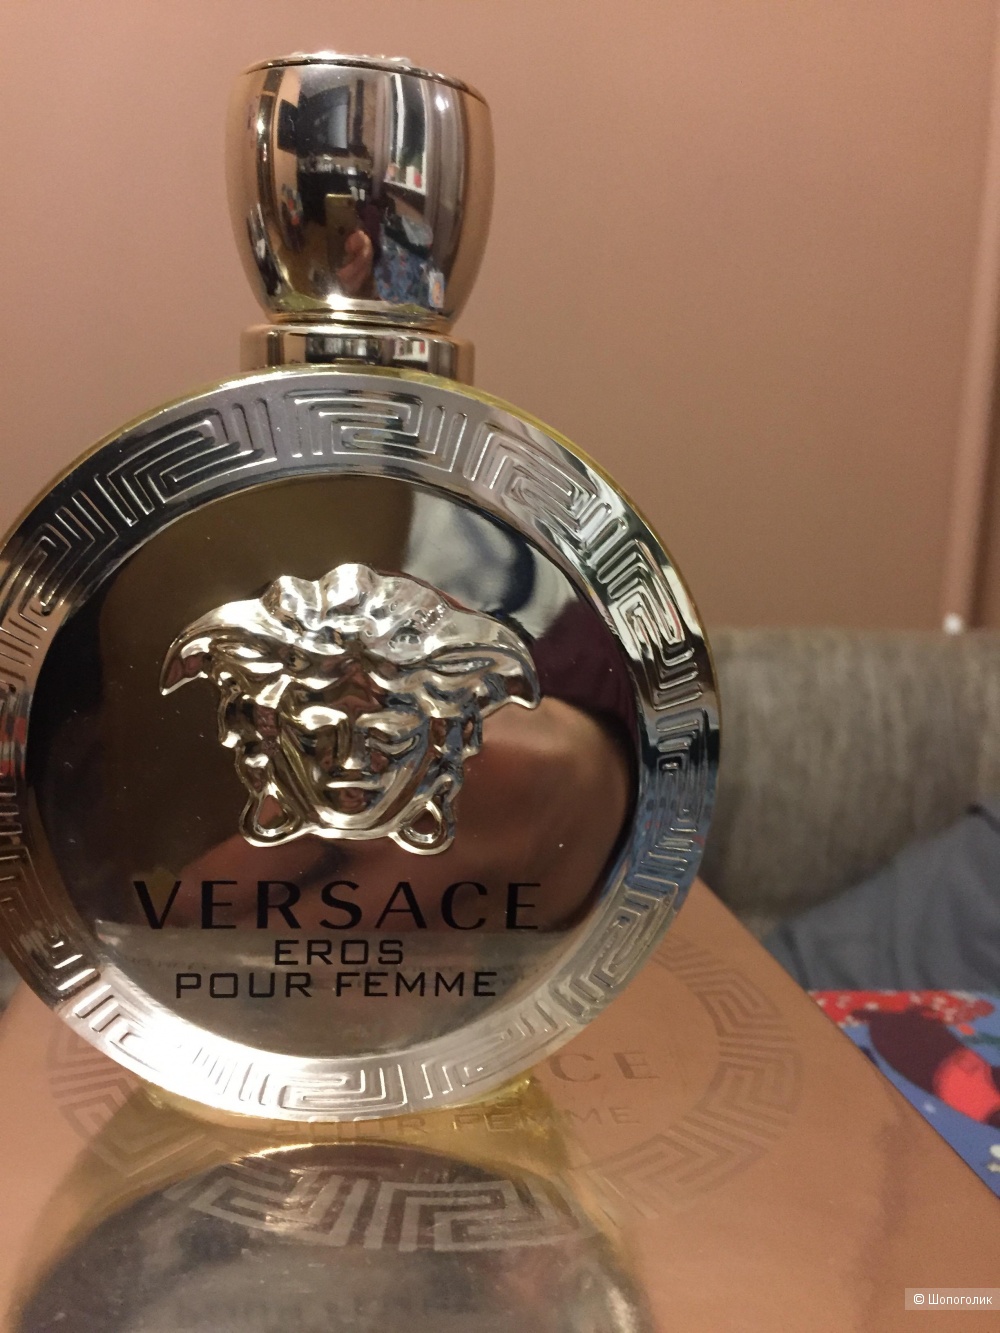 Парфюм Versace eros pour femme, 85 мл